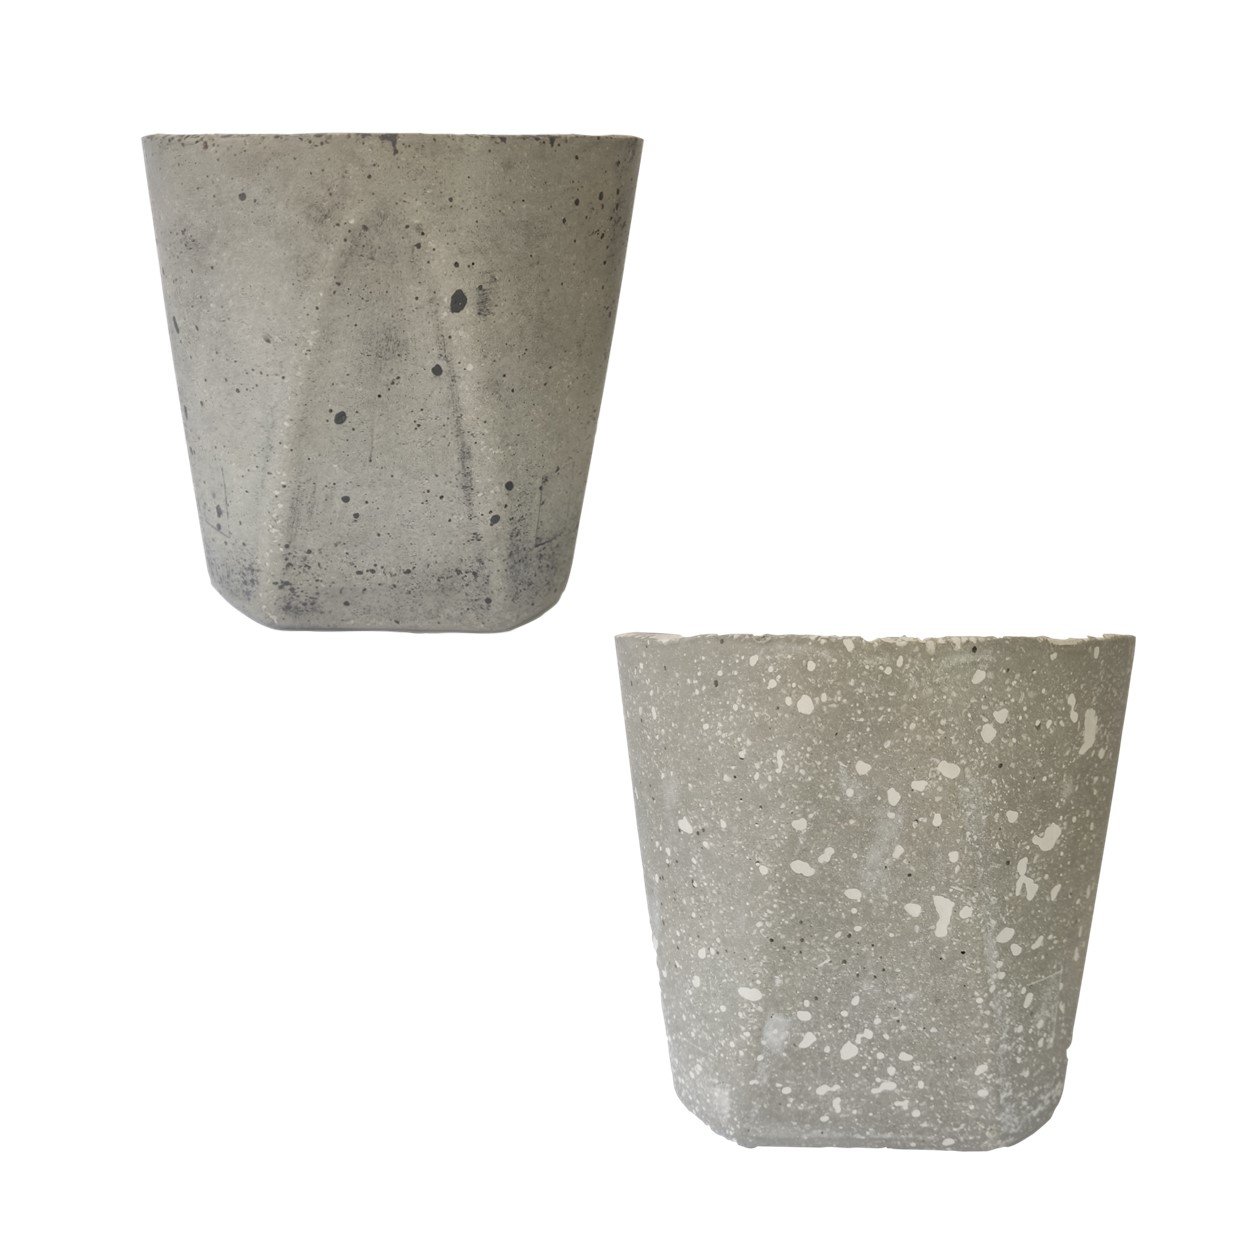 Vaso pote (19x17 cm) de cimento leve para planta:1- Preto - 3